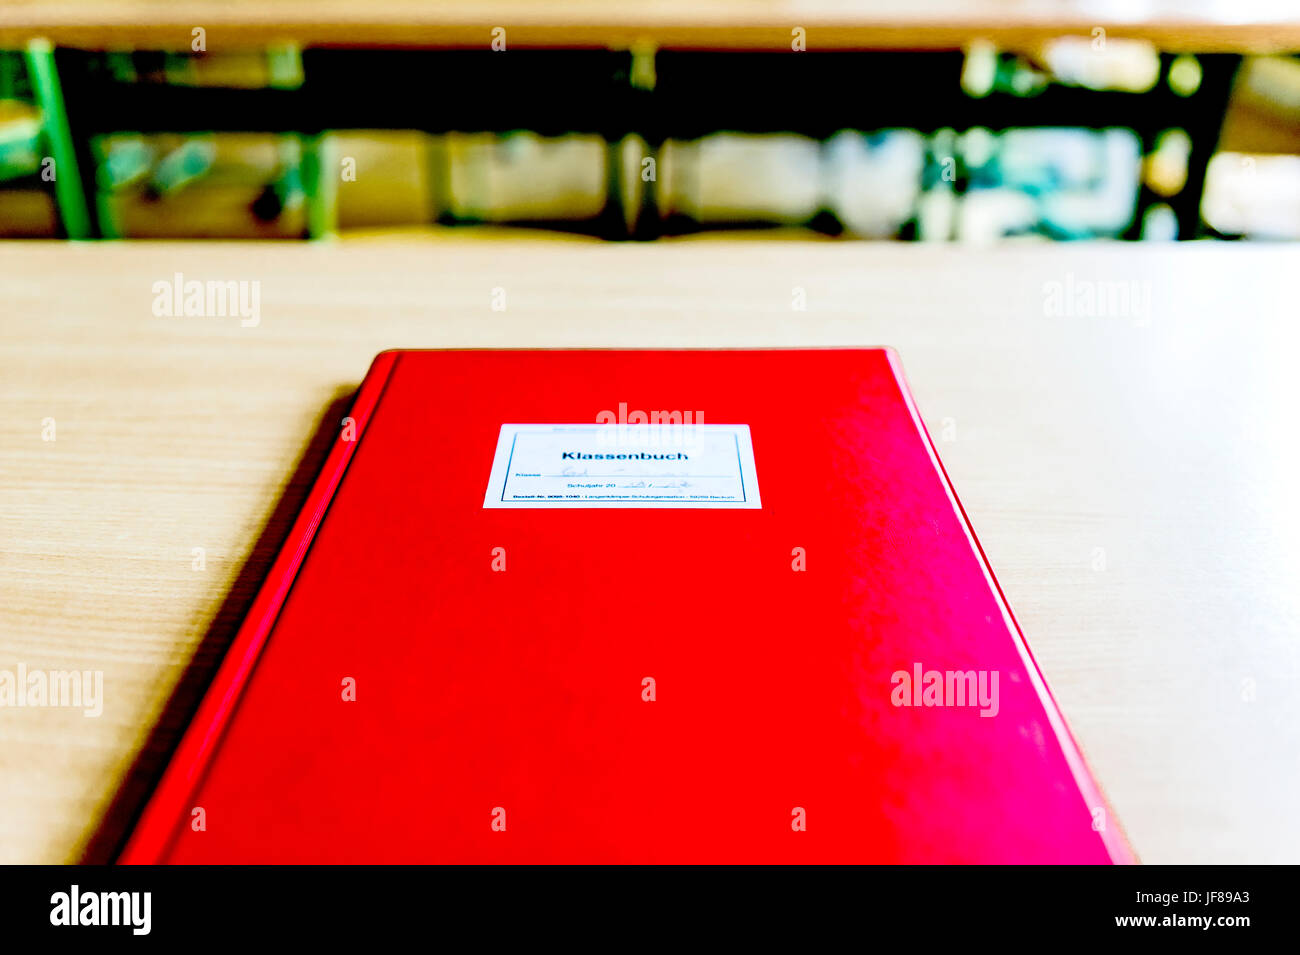 Klassenbuch - livre de classe dans une salle de classe Banque D'Images